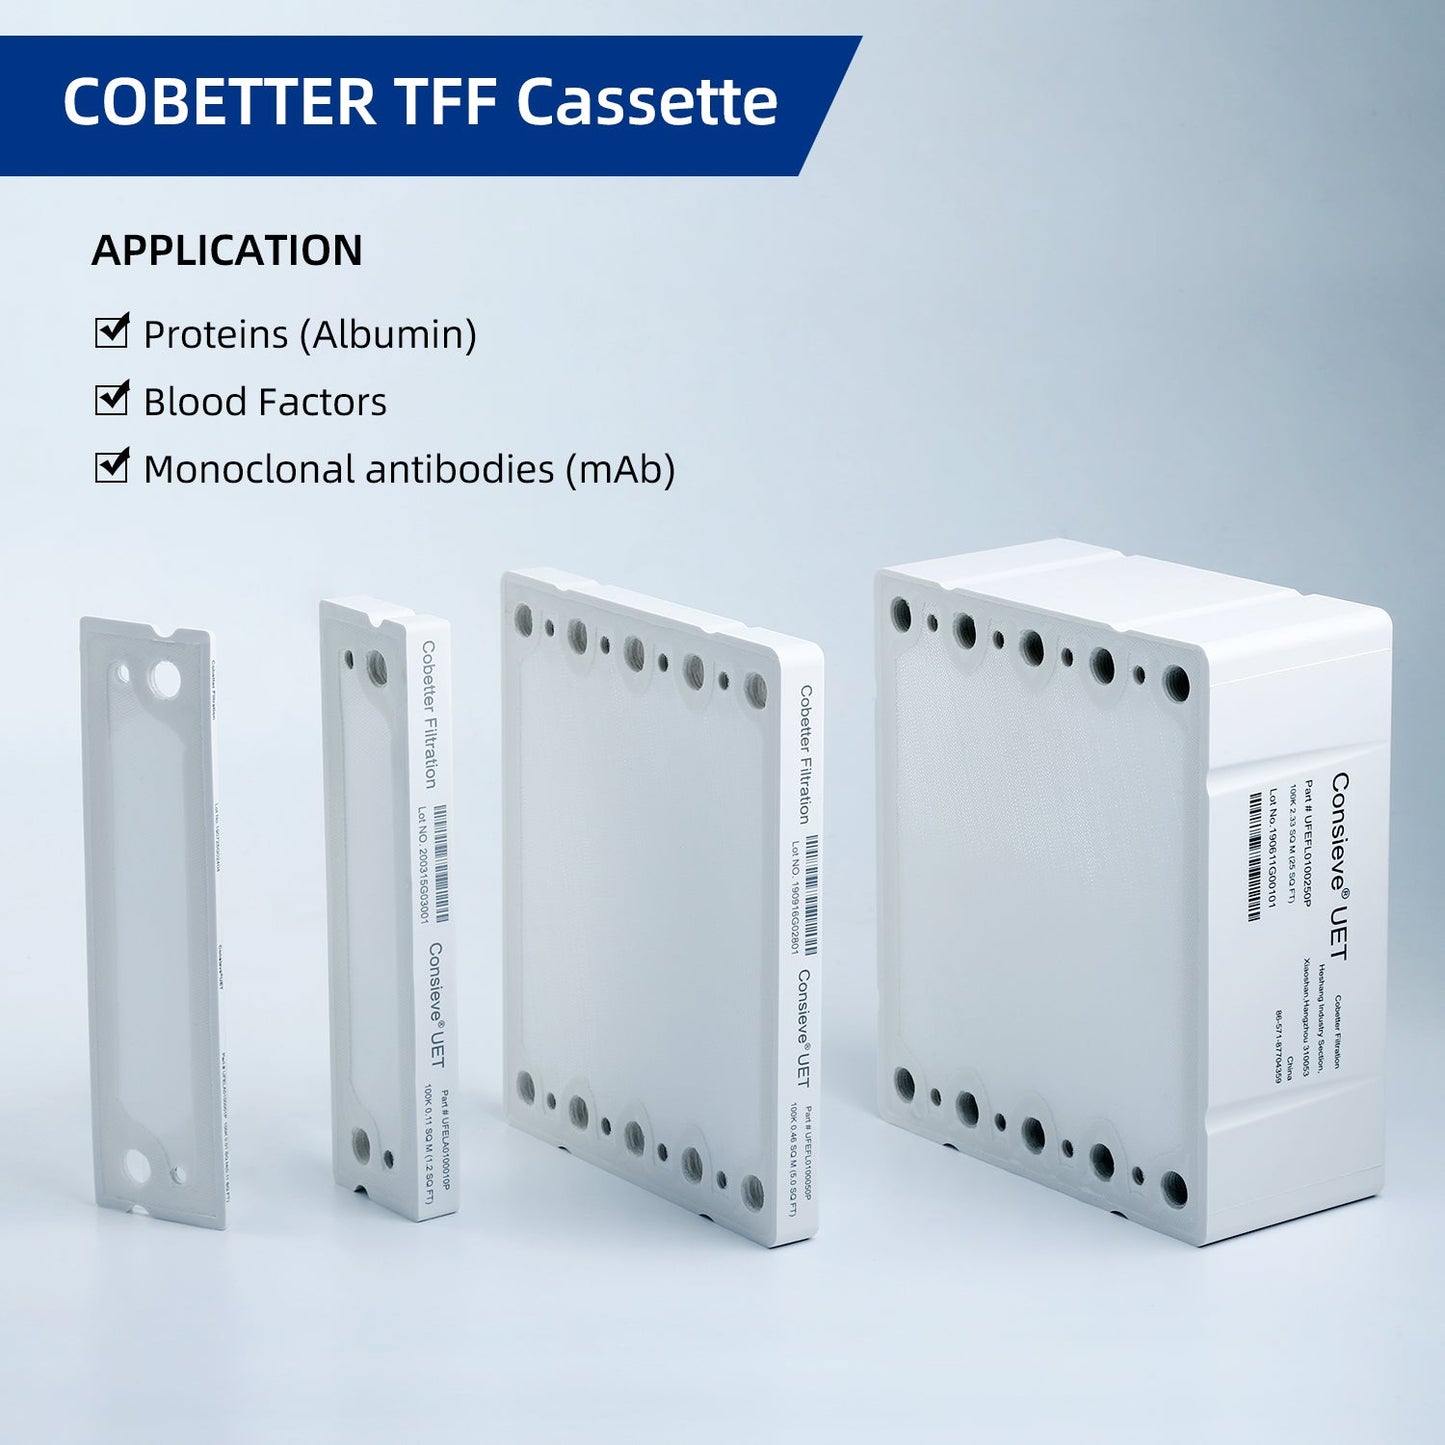 Cobetter lab tff cassette RC membrane applications